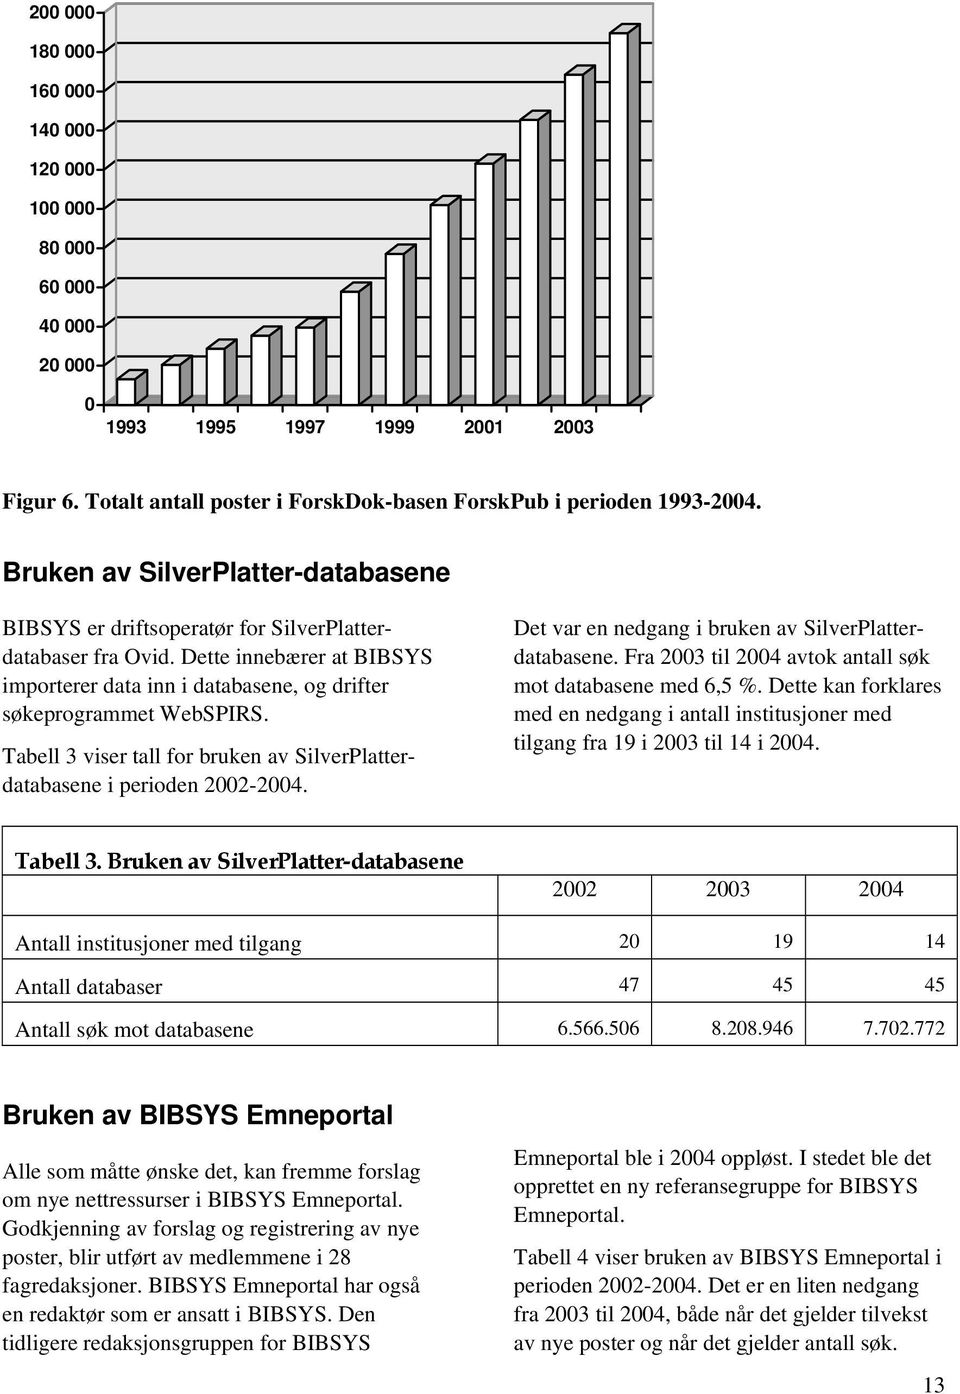 Tabell 3 viser tall for bruken av SilverPlatterdatabasene i perioden 2002-2004. Det var en nedgang i bruken av SilverPlatterdatabasene. Fra 2003 til 2004 avtok antall søk mot databasene med 6,5 %.